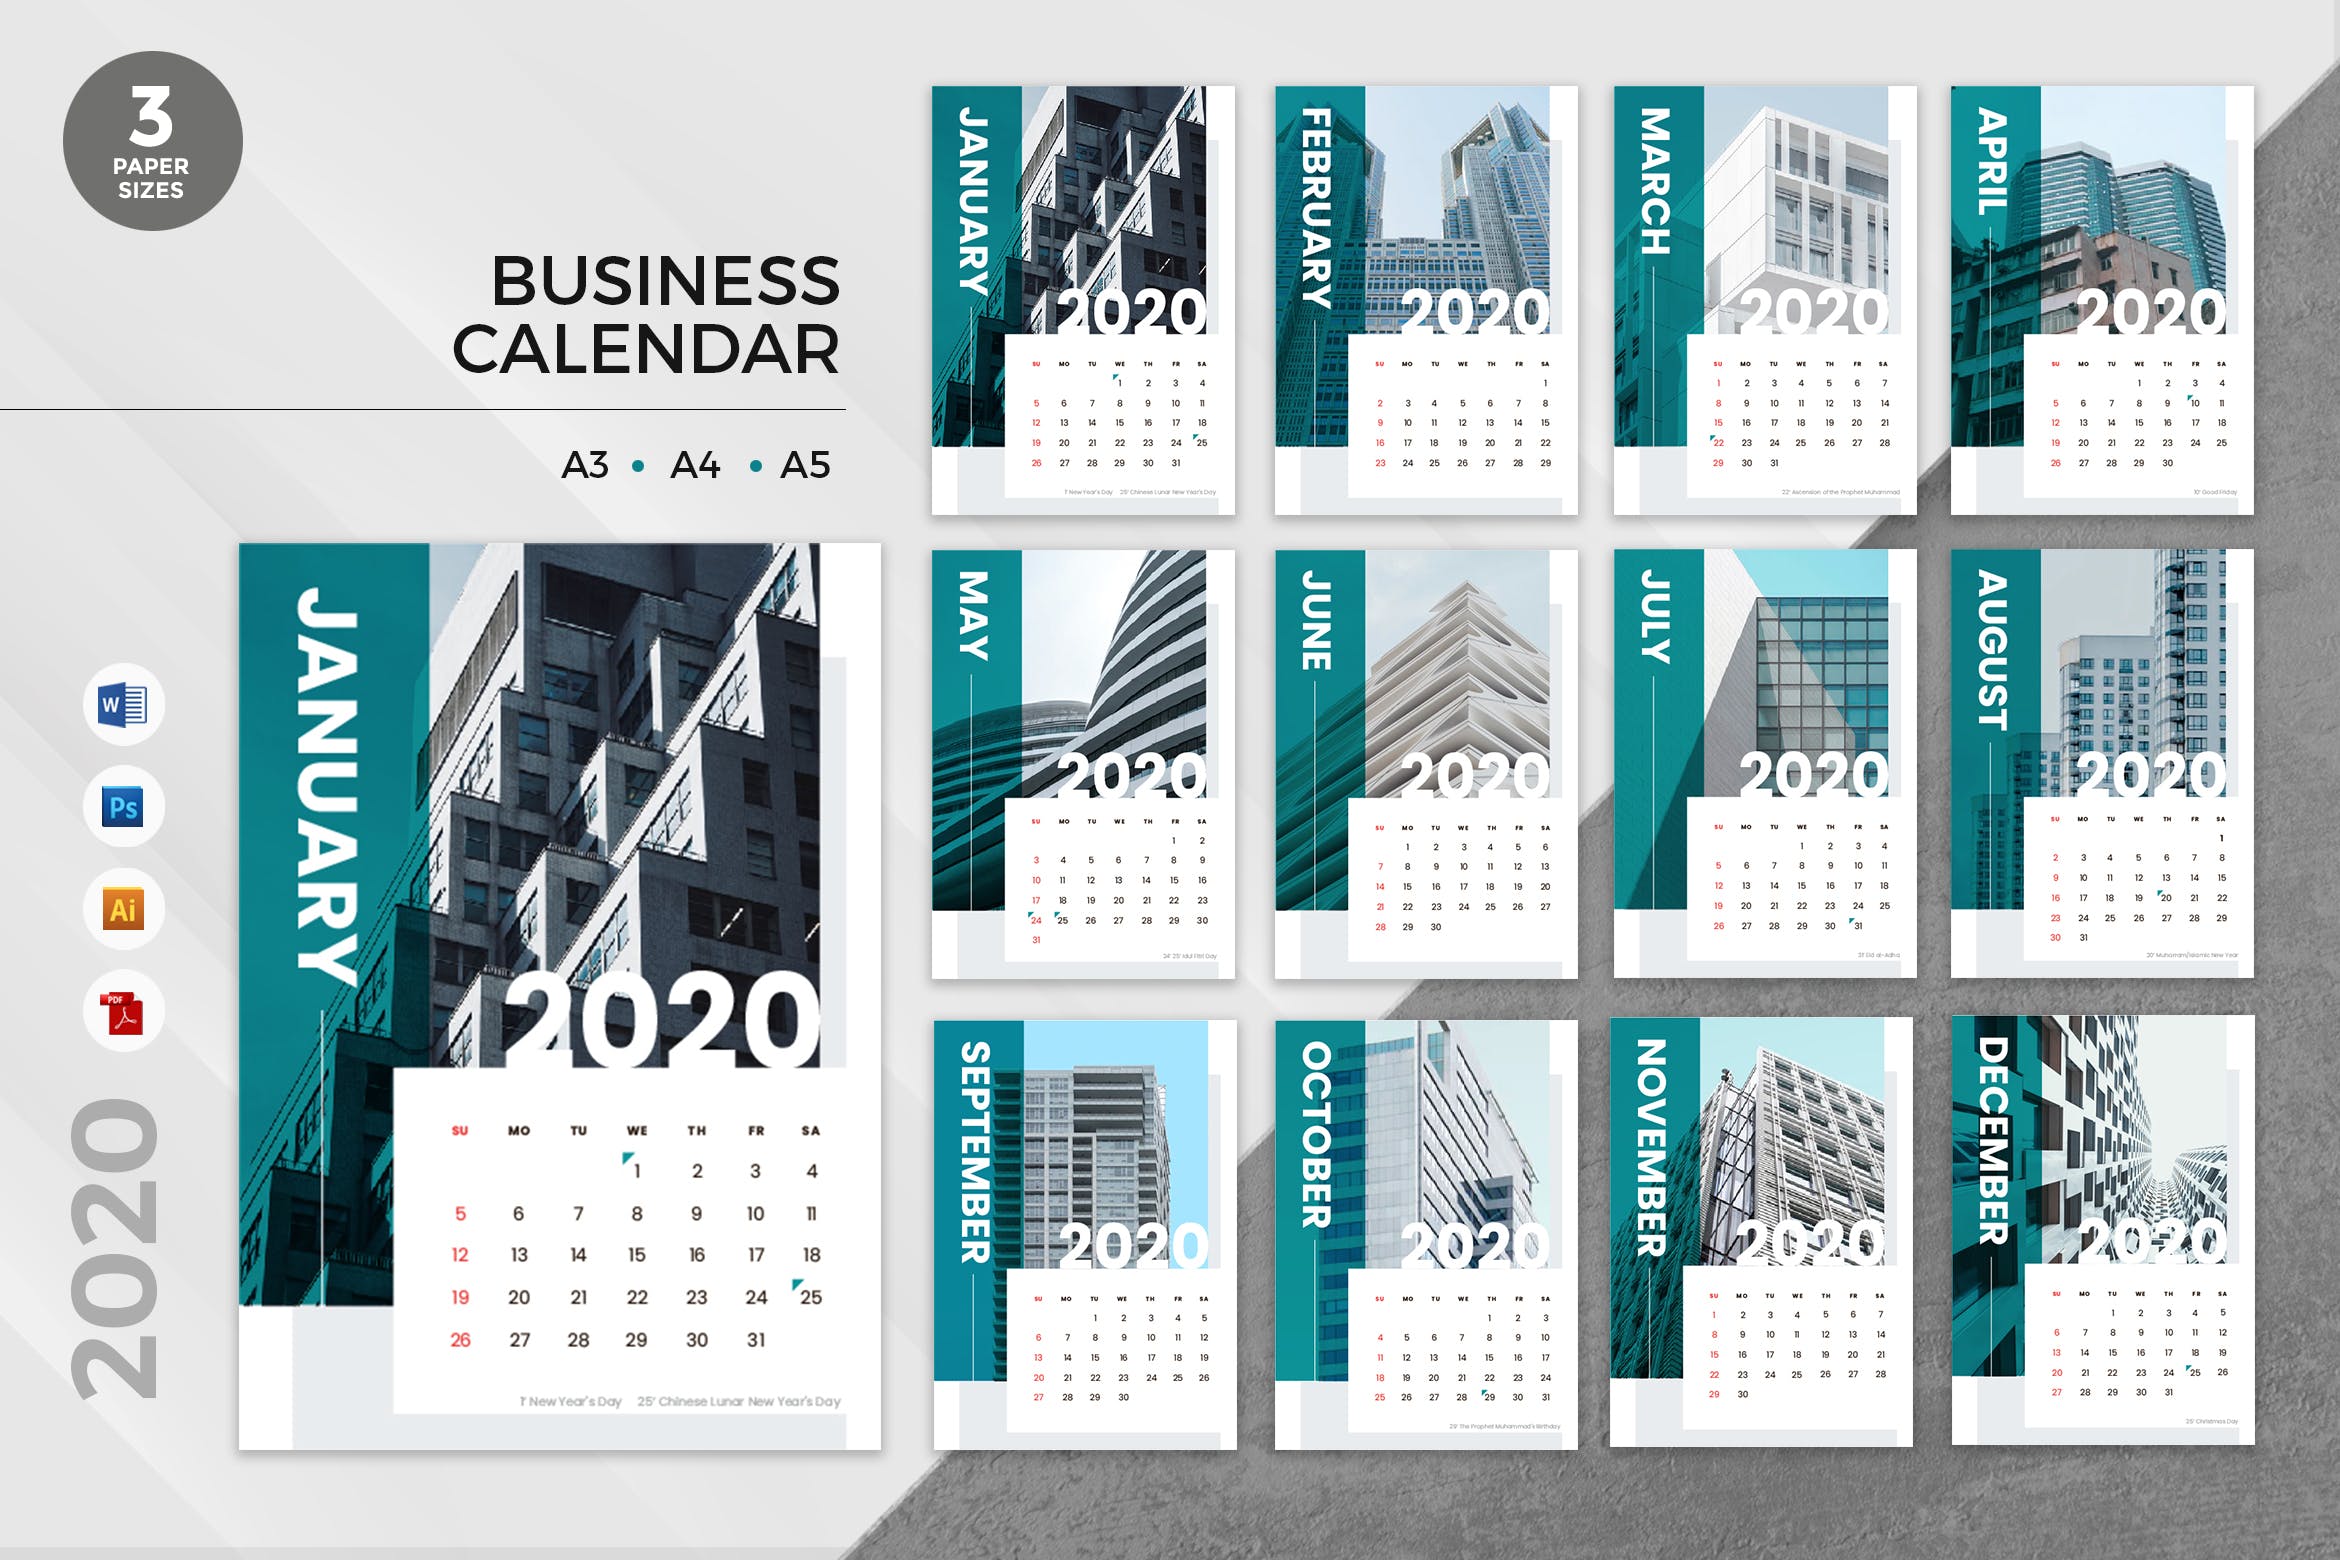 公司日历定制设计2020年日历表模板 Corporate Business 2020 Calendar – AI, DOC, PSD插图